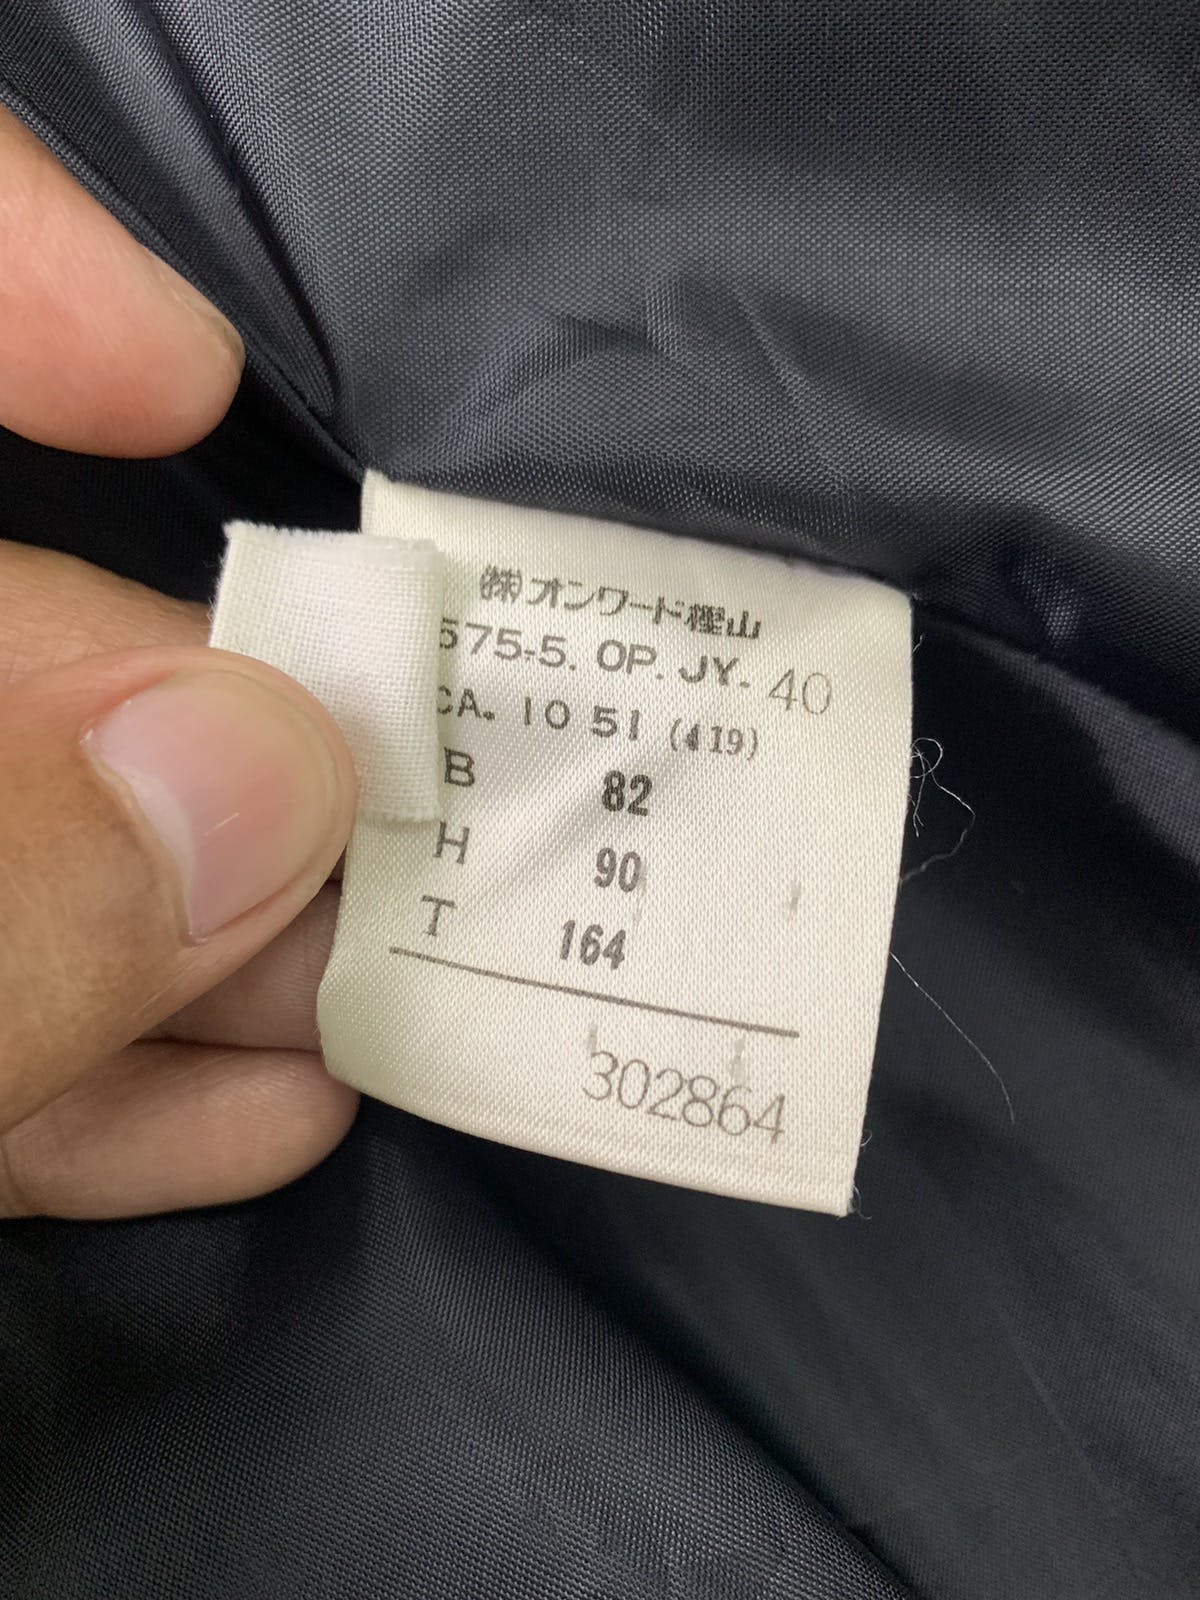 Junior Gaultier Long Coat Made in Japan - 11